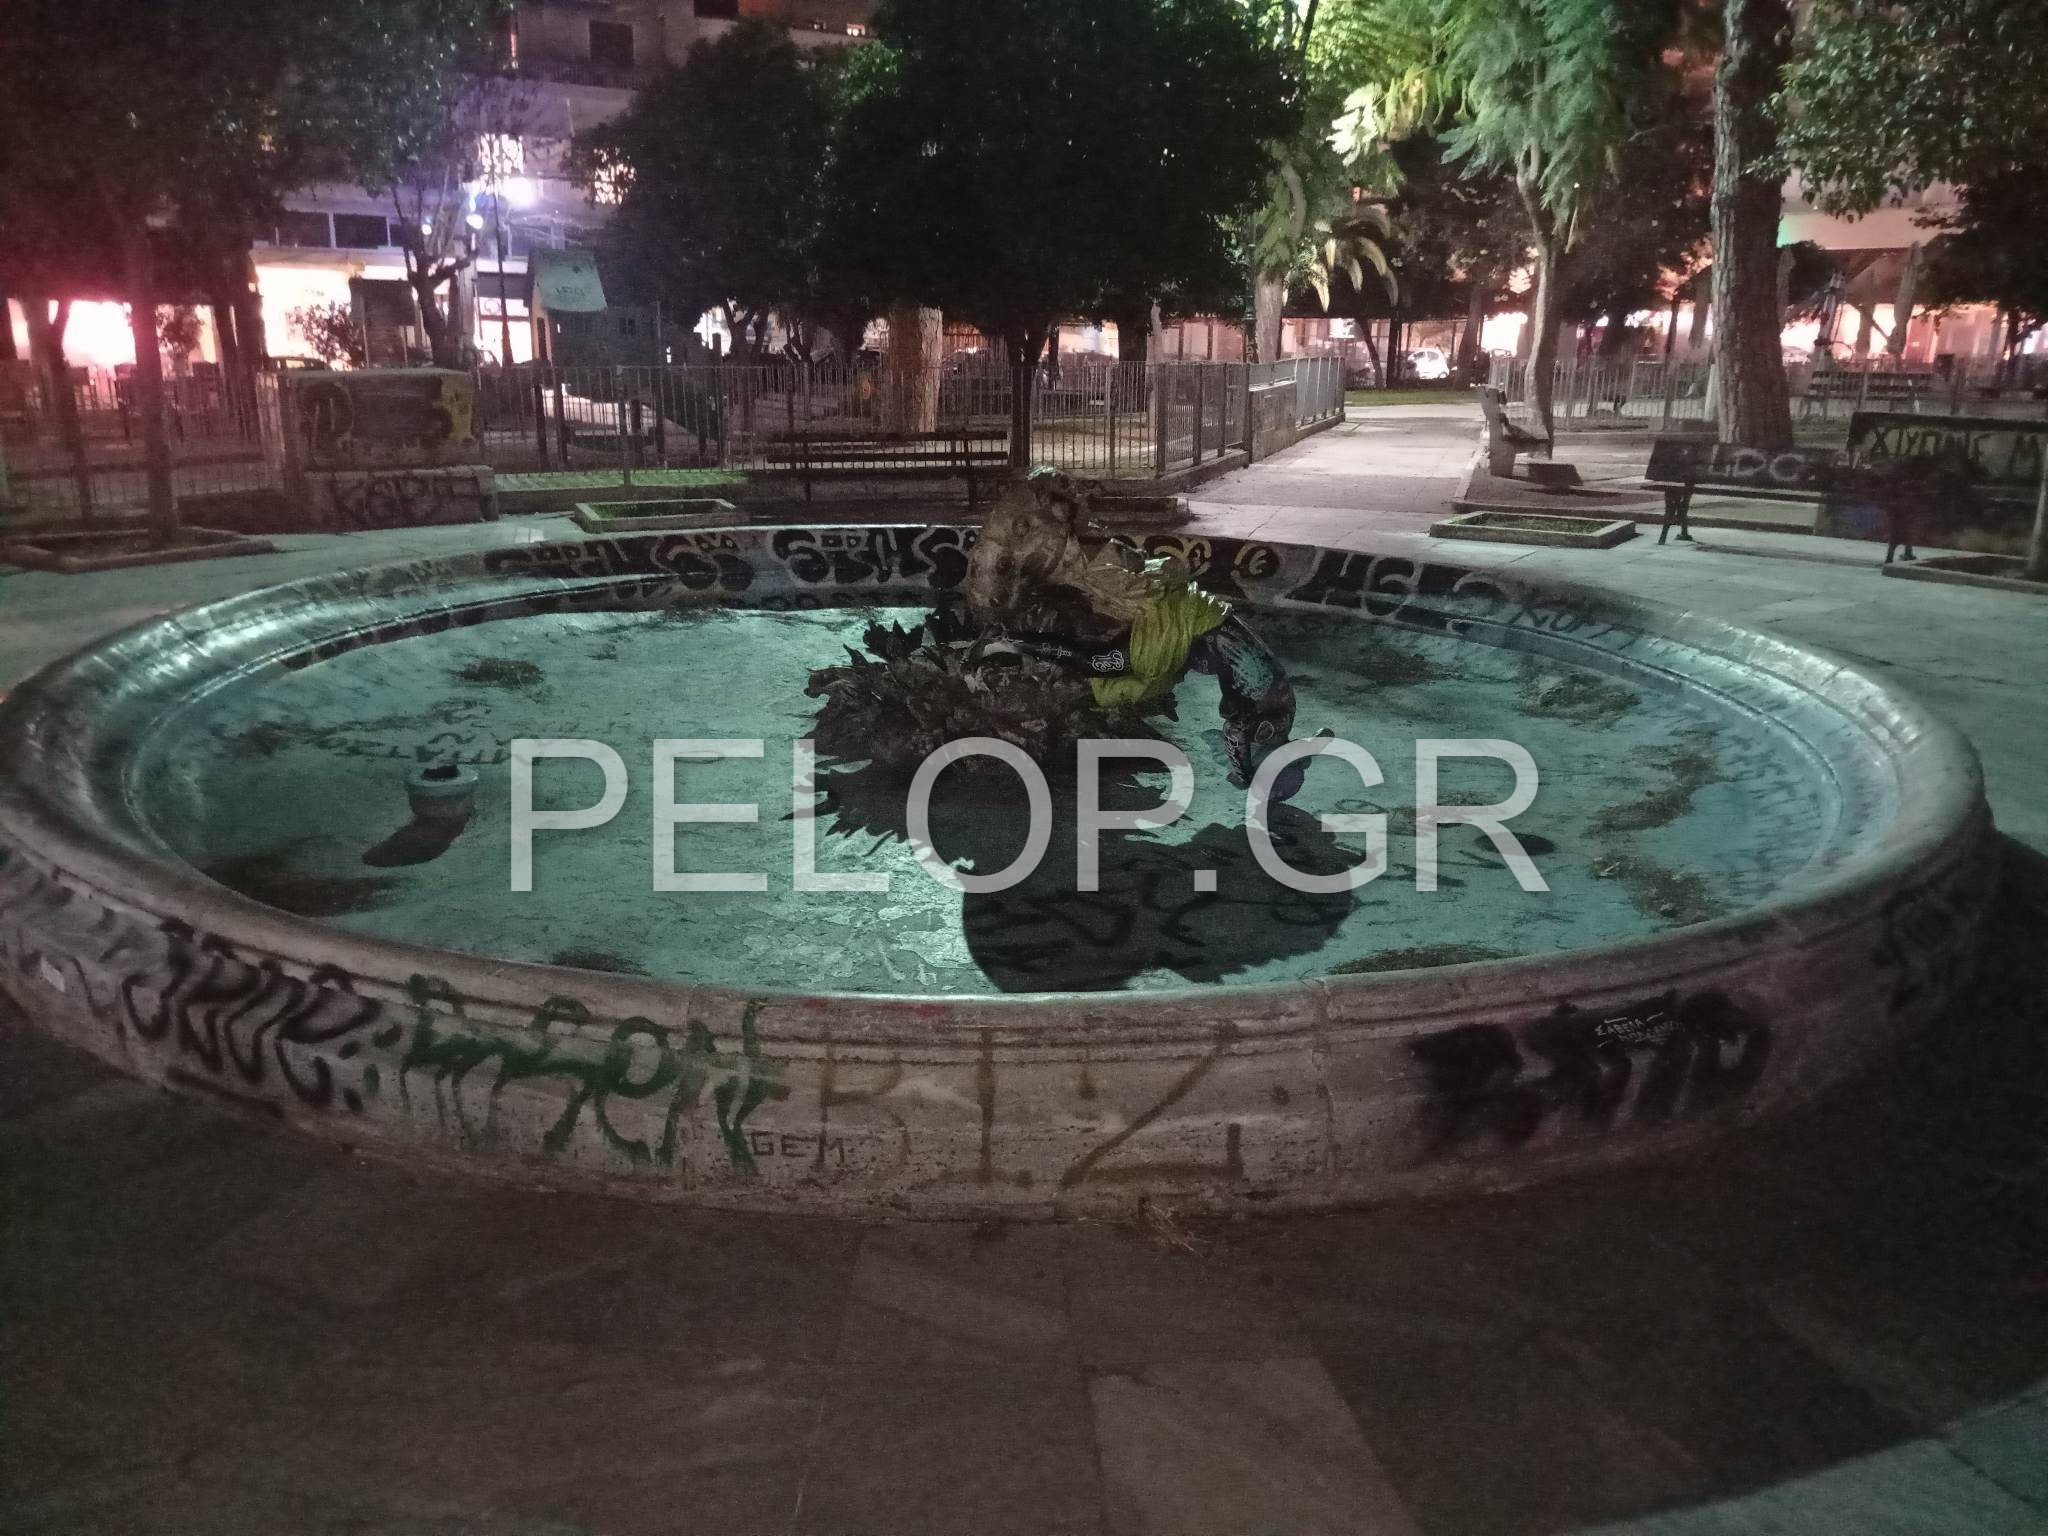 Πάτρα: Αποτροπιασμός για το σιντριβάνι της Πλατείας Όλγας - Οργή για τους βανδαλισμούς ΦΩΤΟ